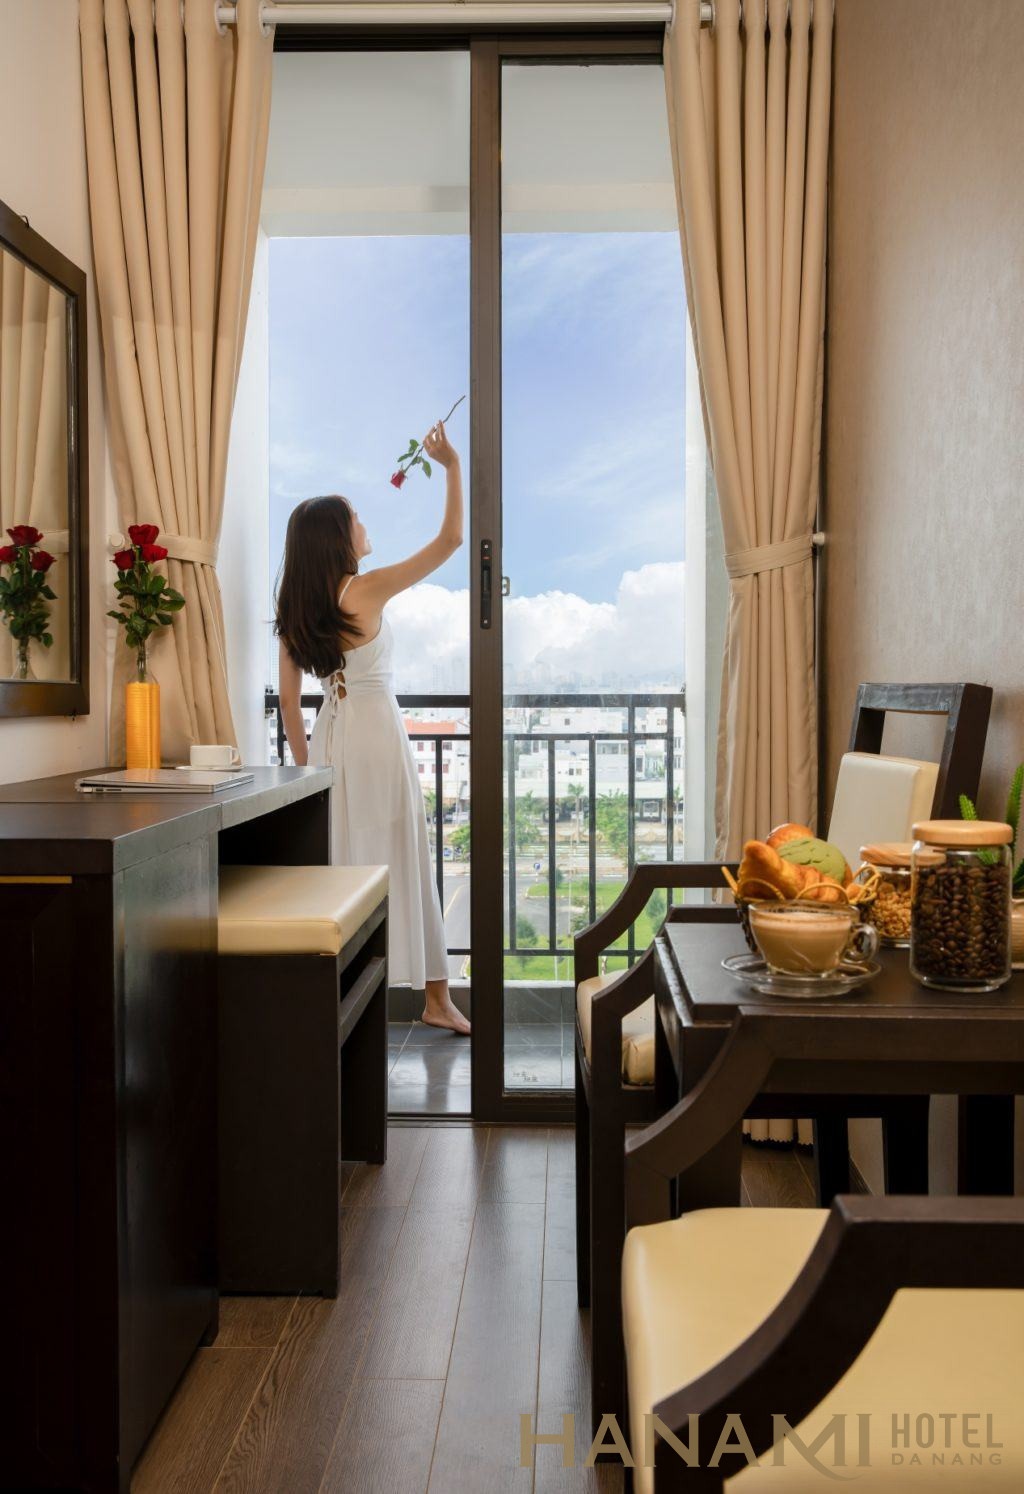 khách sạn ven biển Đà Nẵng giá rẻ , đẹp, chất lượng cao